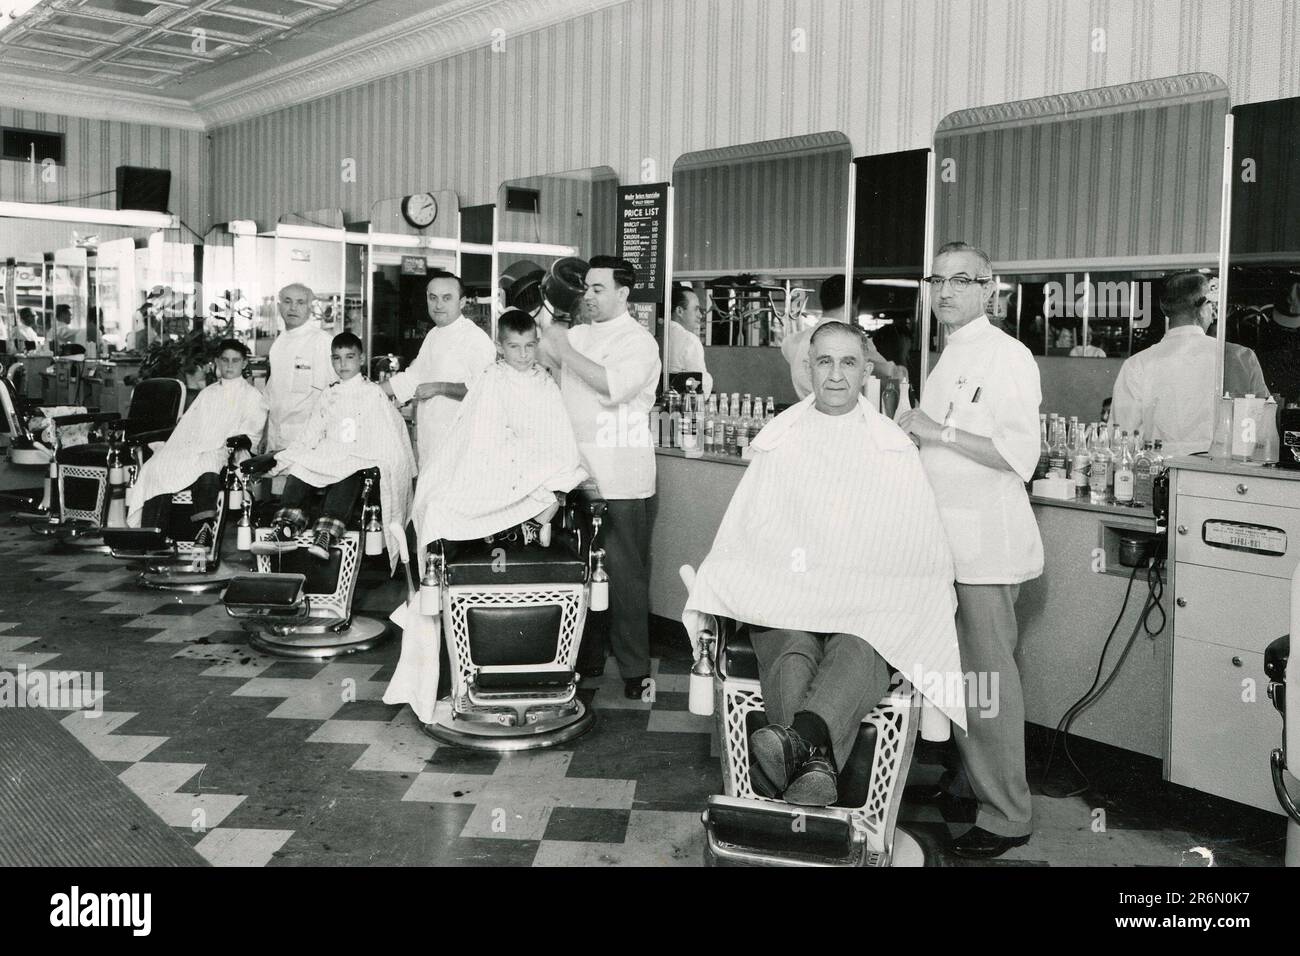 1950s Barbershop, Vintage Barber Shop interior, 1950s Barber Shop Stock ...